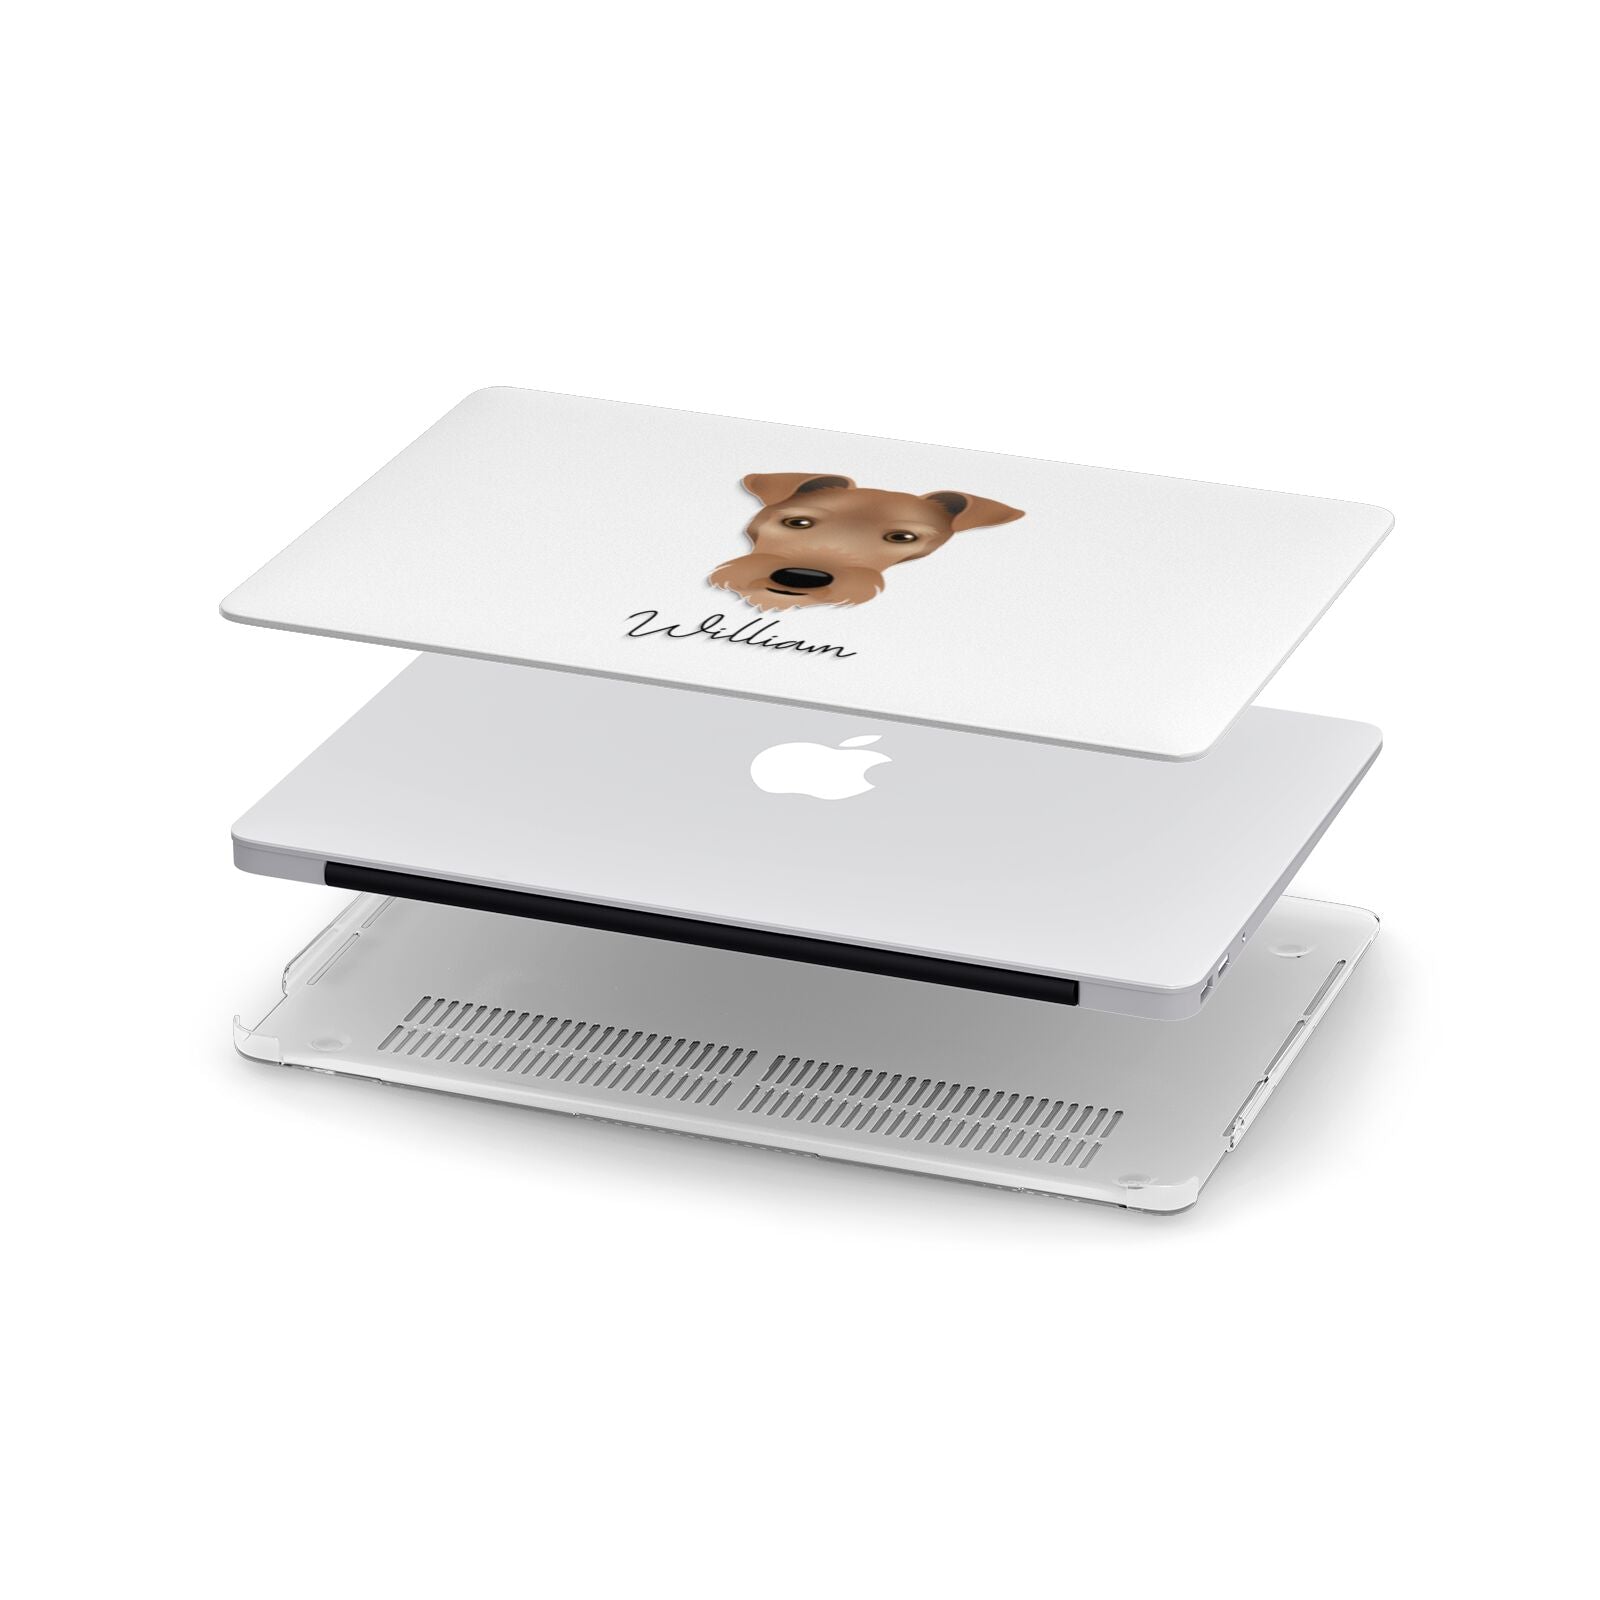 Irish Terrier Personalised Apple MacBook Case in Detail